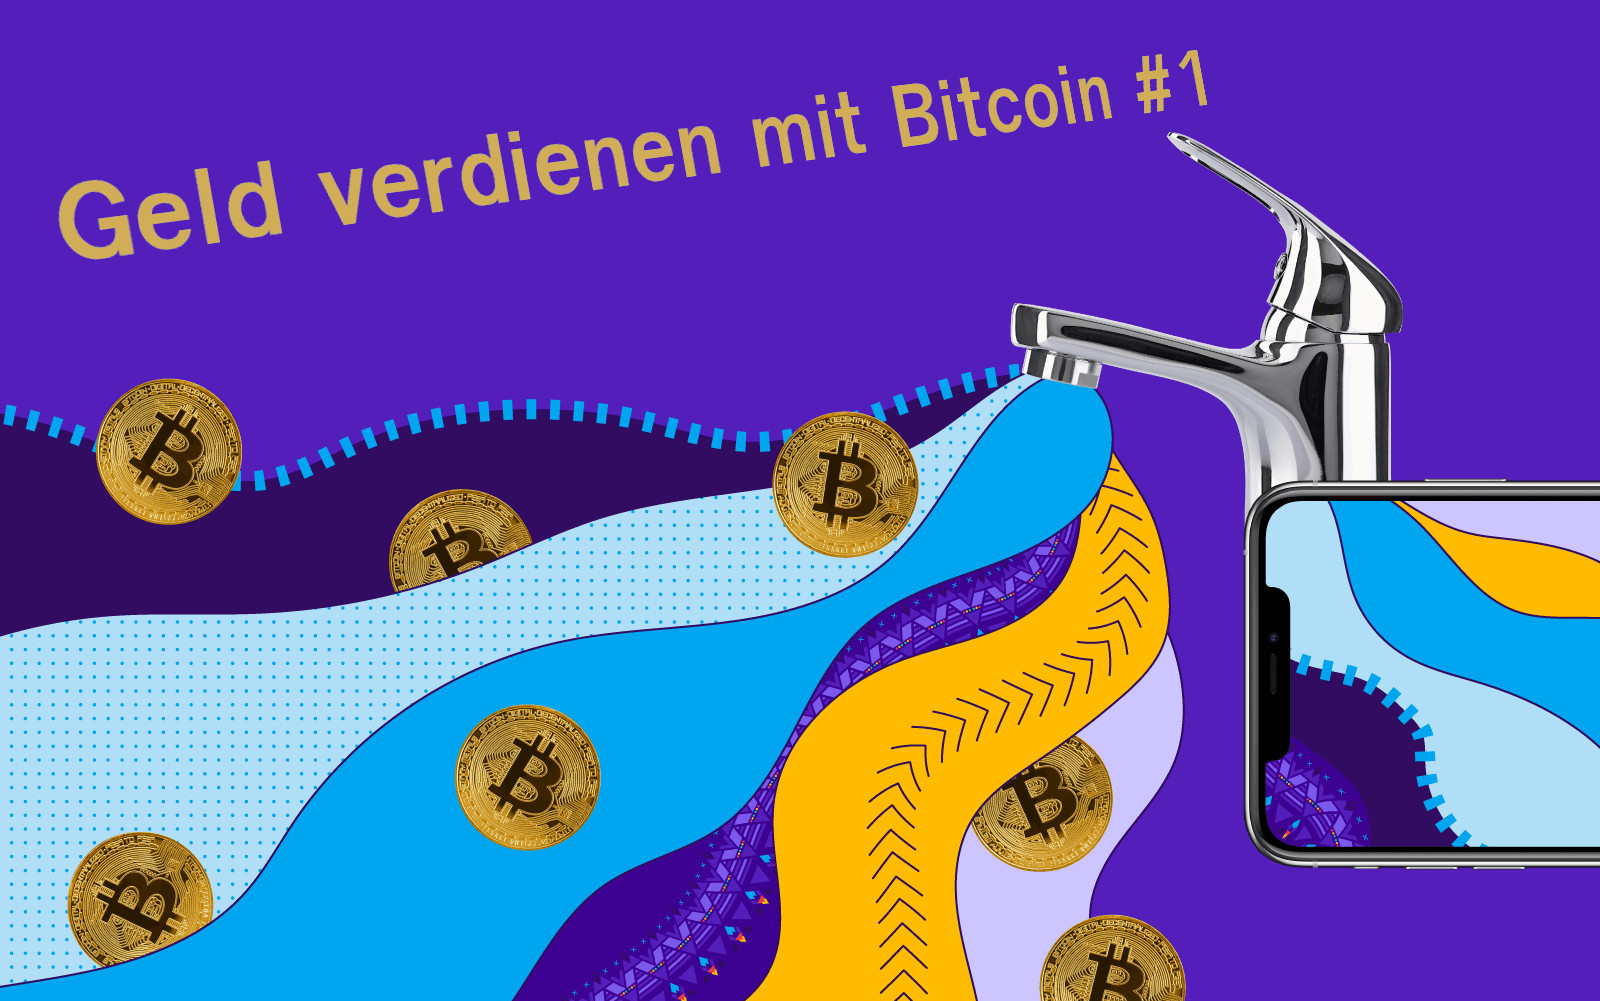 Geld verdienen mit Bitcoin #1: Passives Einkommen